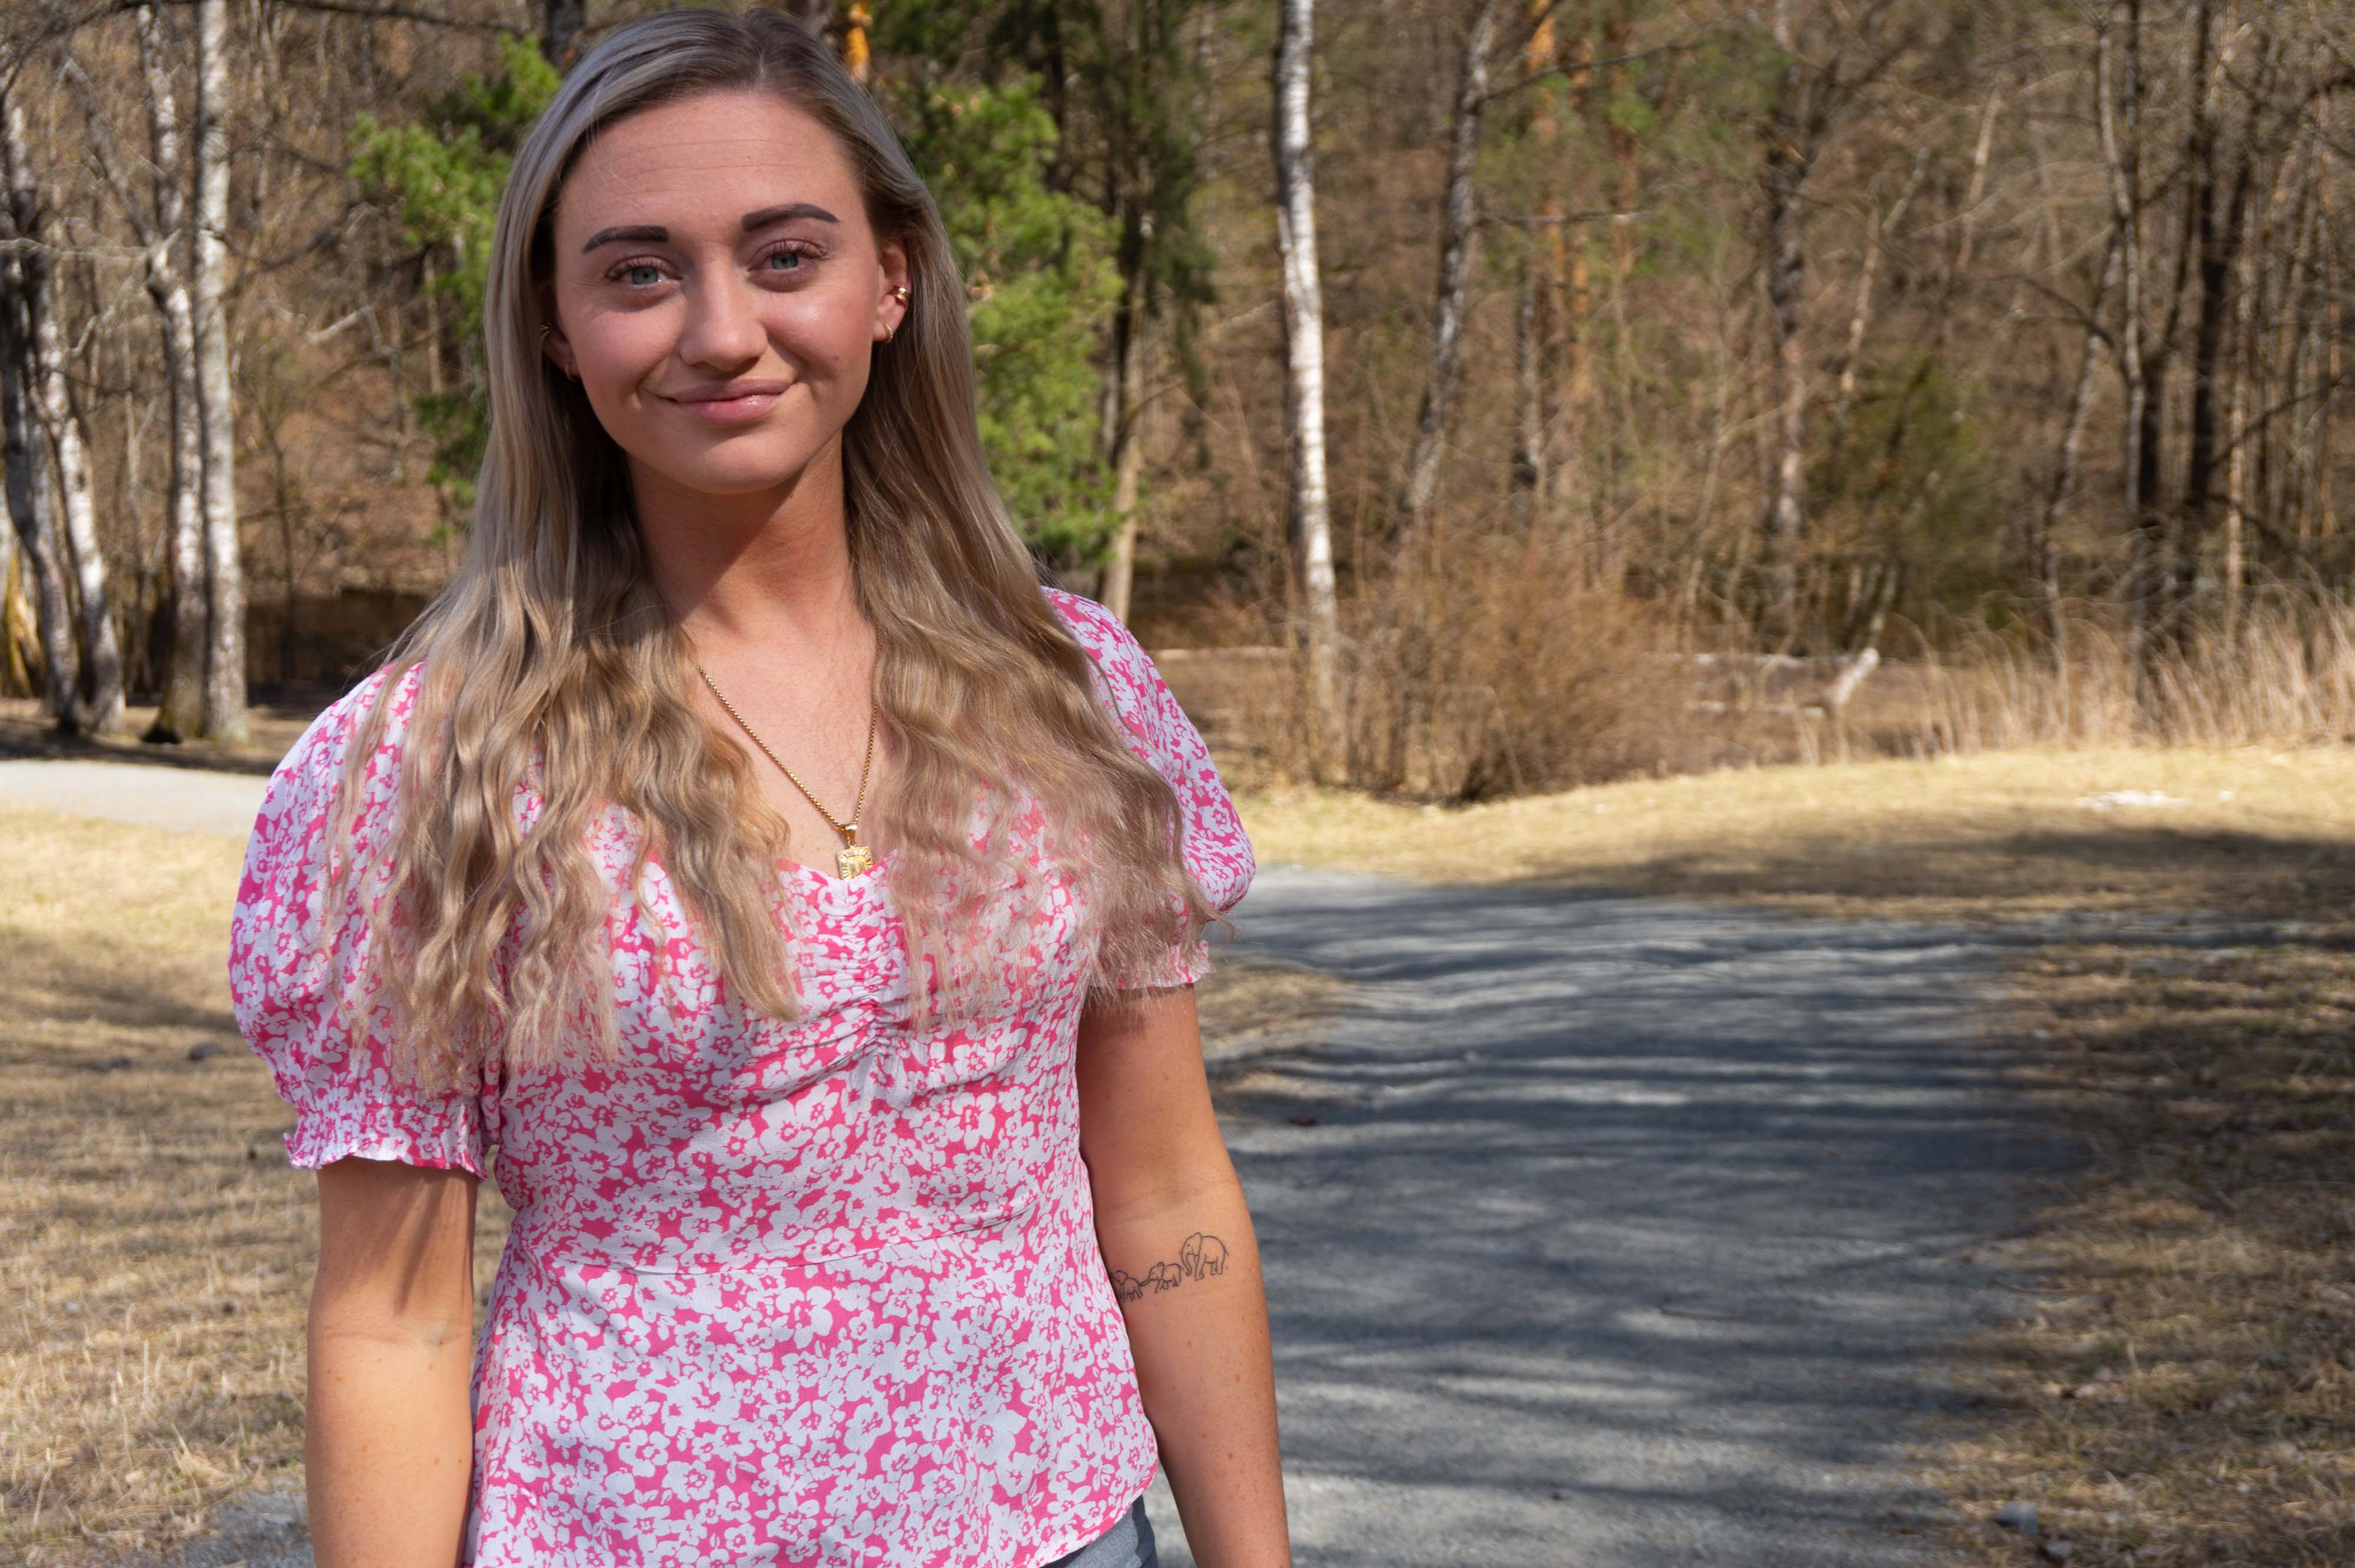 Ung blond kvinne i blomstrete kjole i skogslandskap